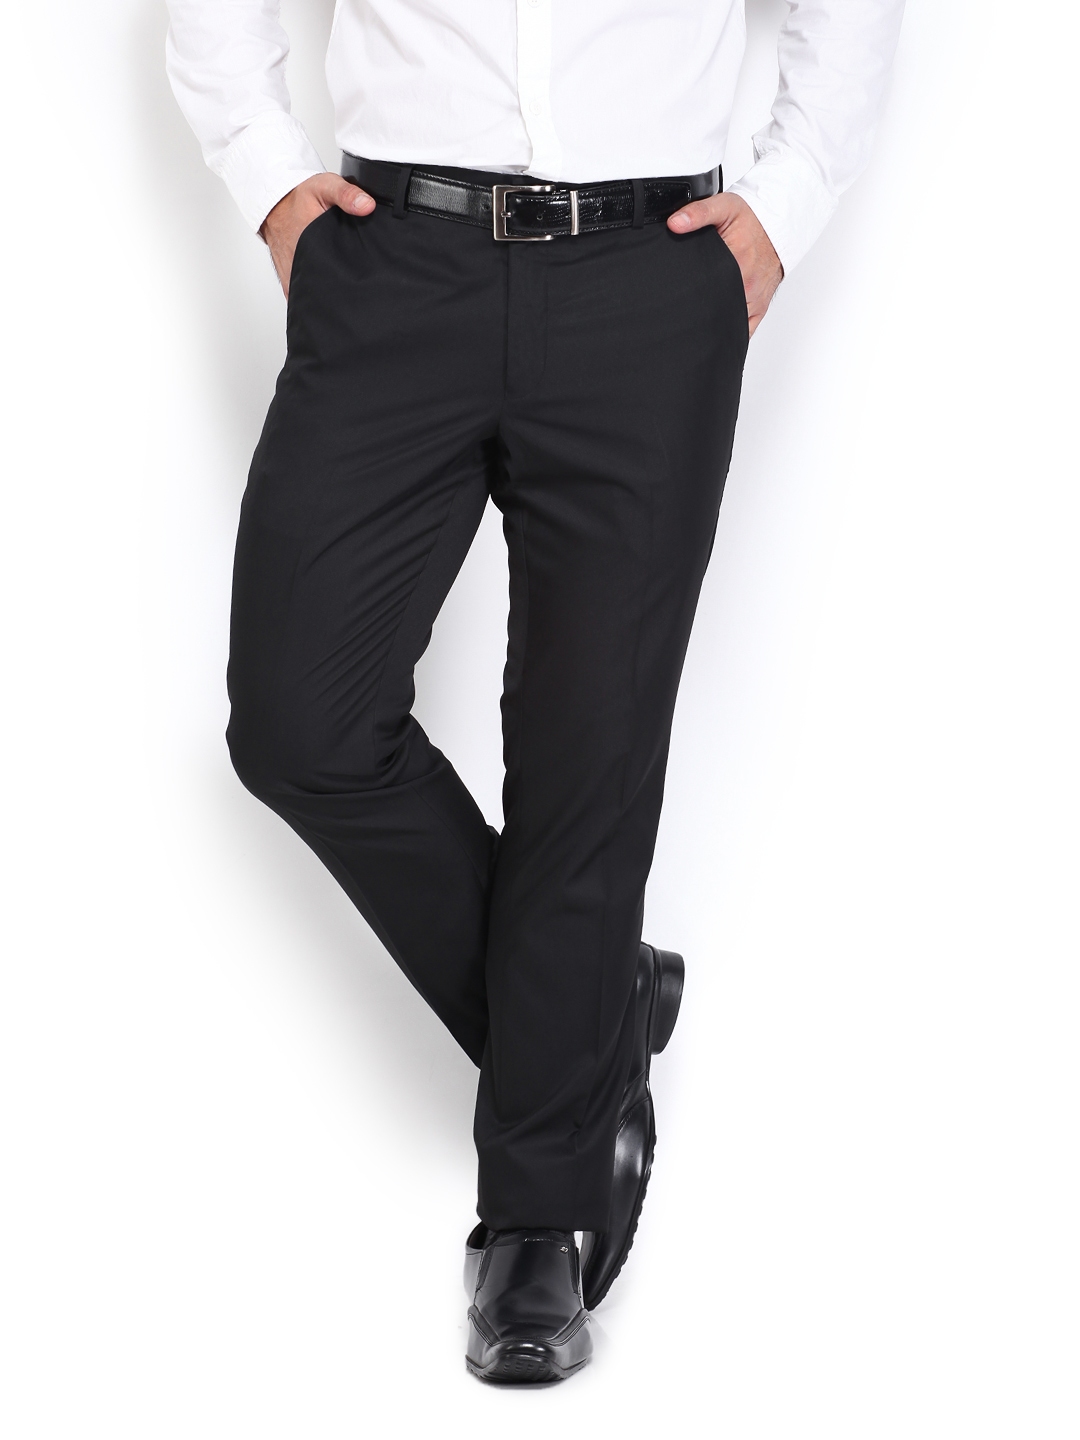 John miller Slim Fit Men Beige Trousers  Buy John miller Slim Fit Men  Beige Trousers Online at Best Prices in India  Flipkartcom